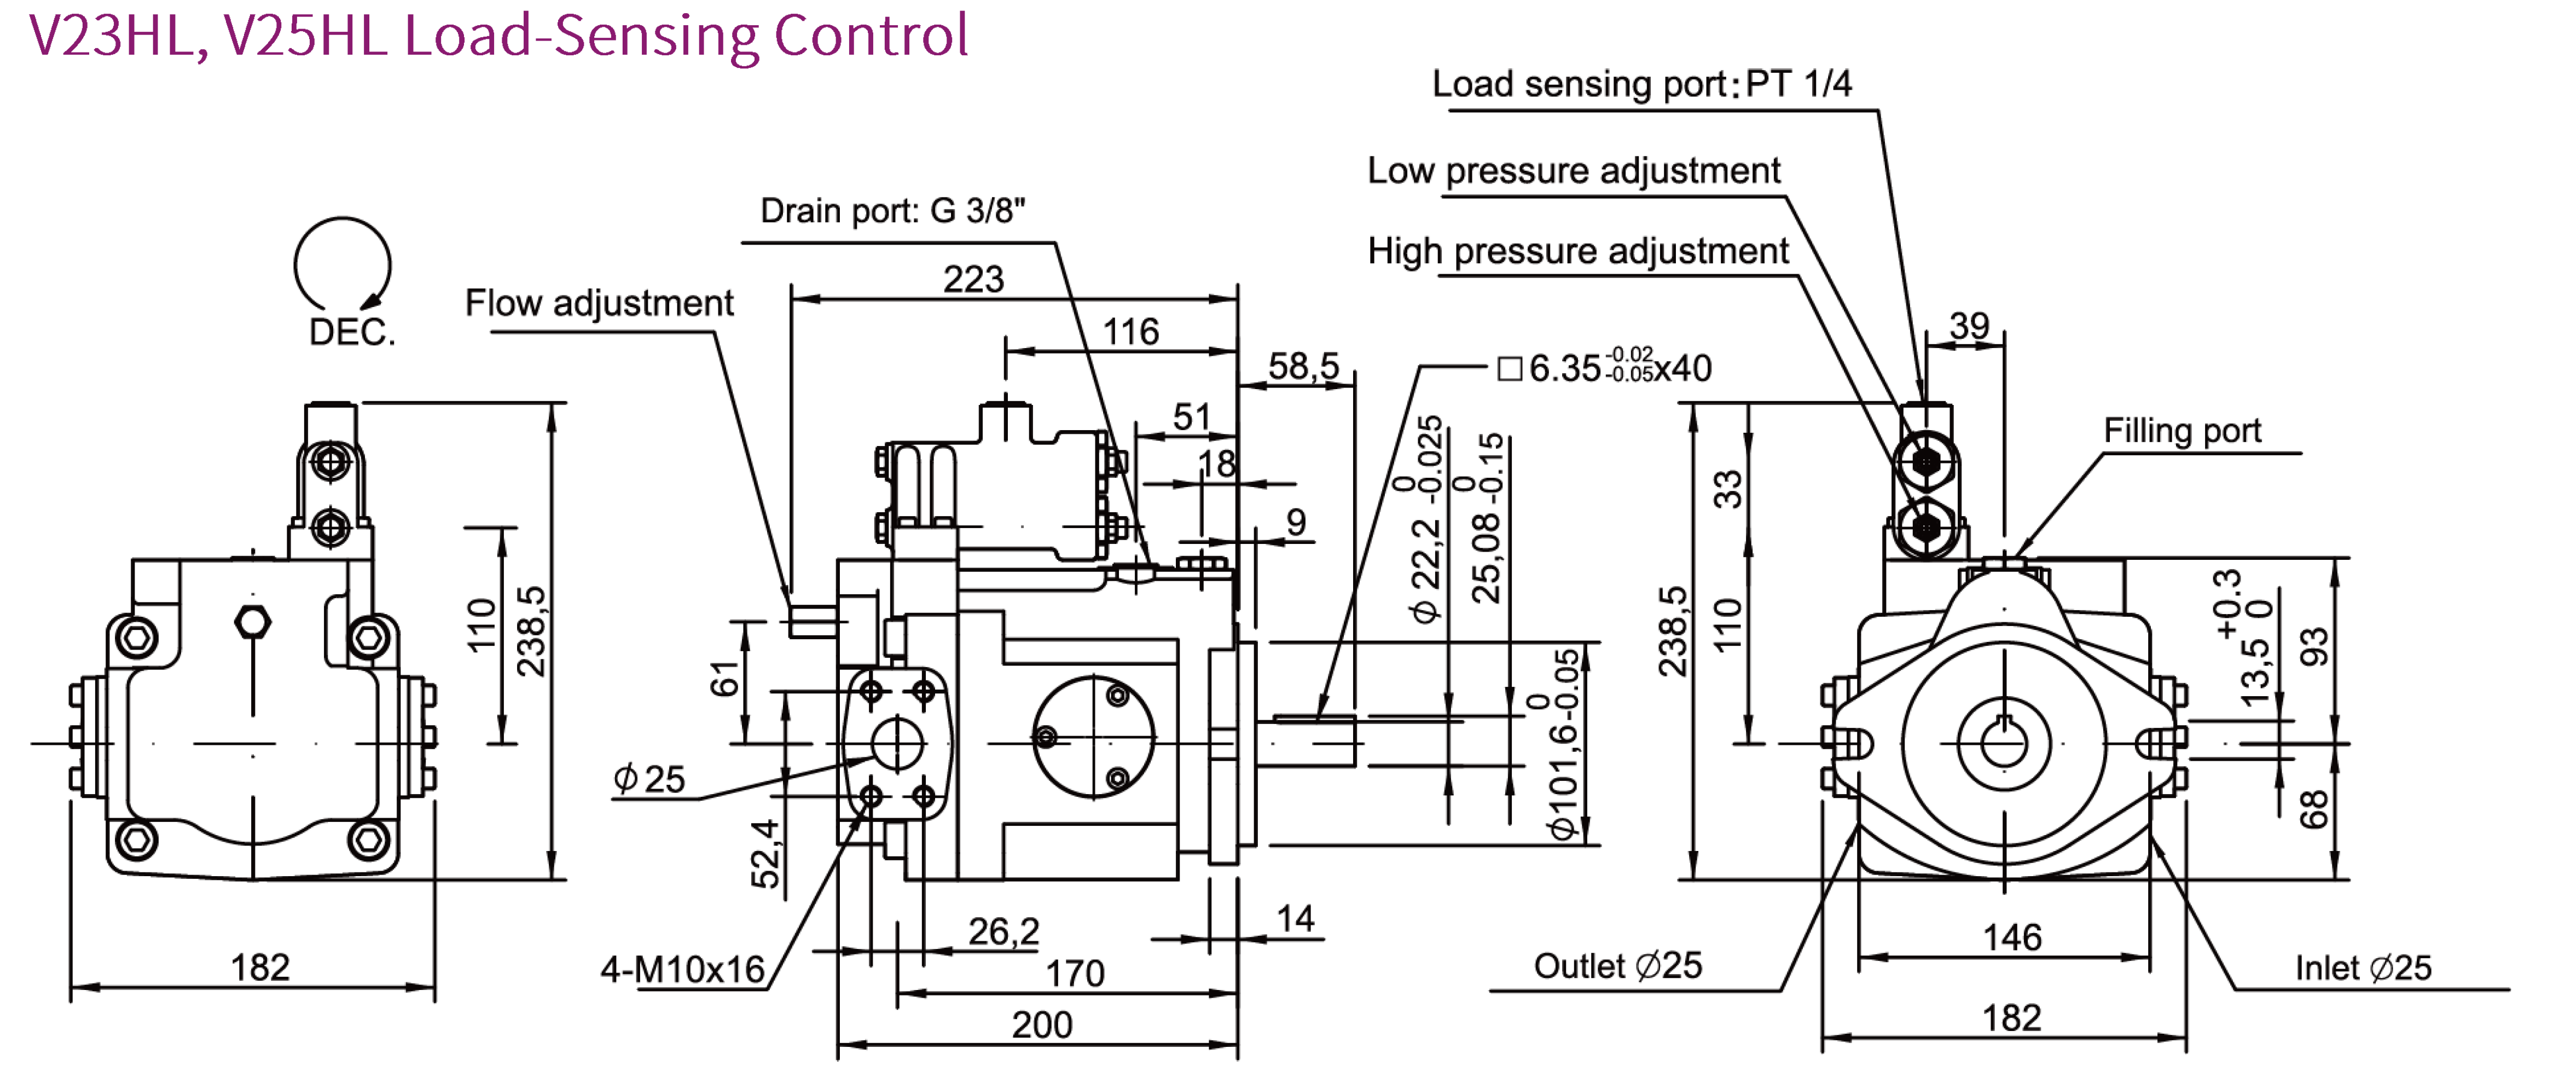 Dimensione, misurazione della pompa assiale a pistoni CML serie V